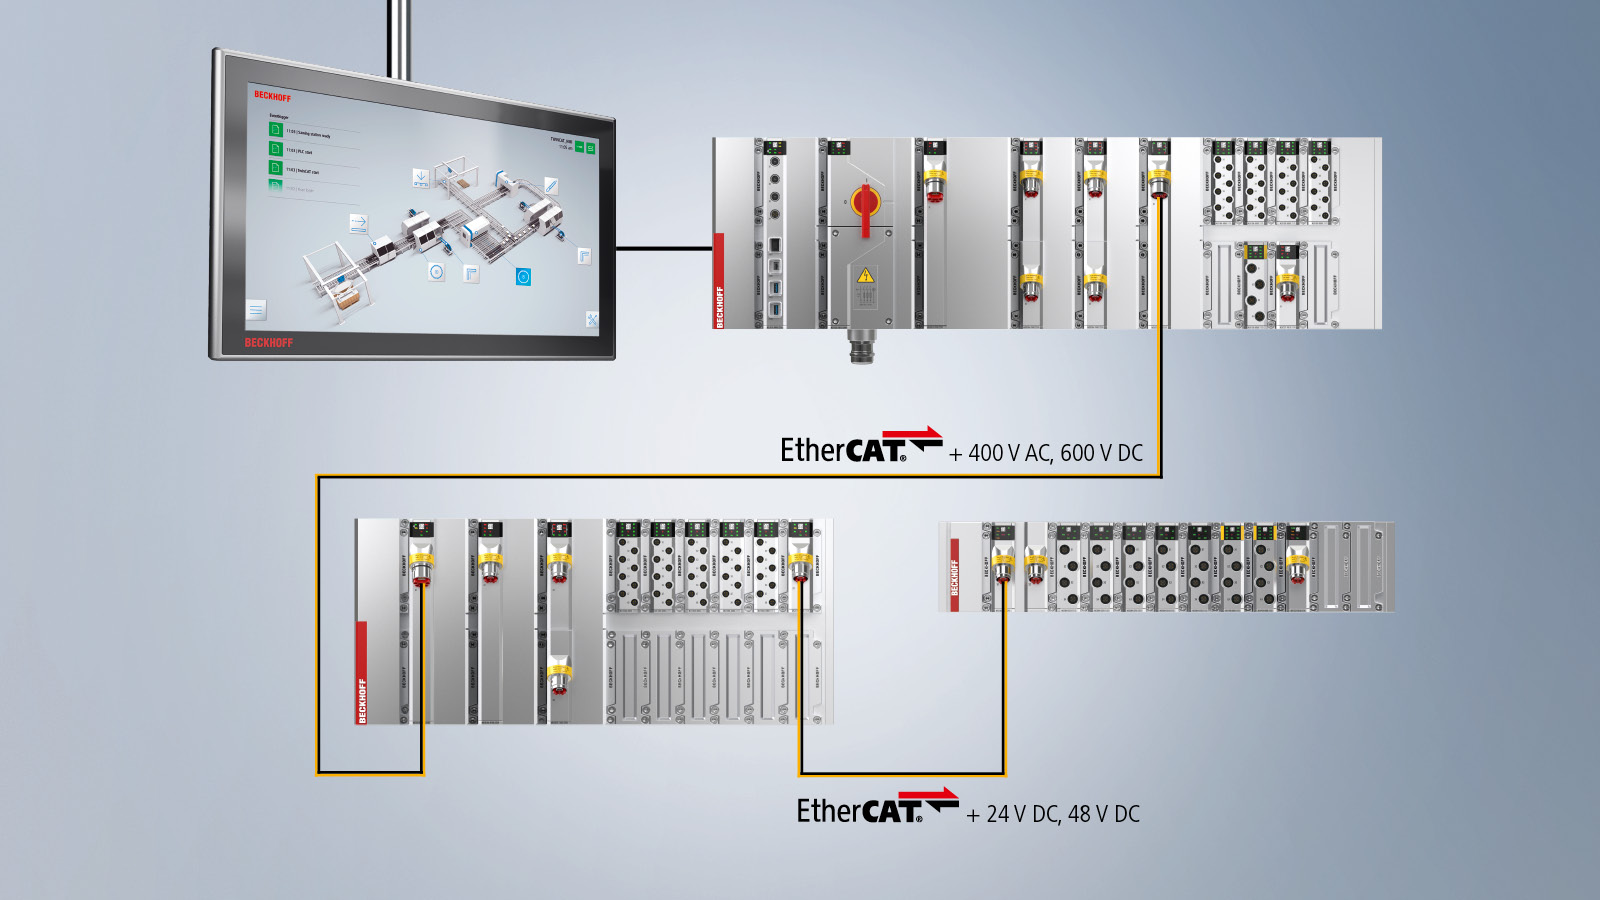 通过 MX-System 和 EtherCAT，传统的集中式控制方式变成了分散控制的分布式控制平台  